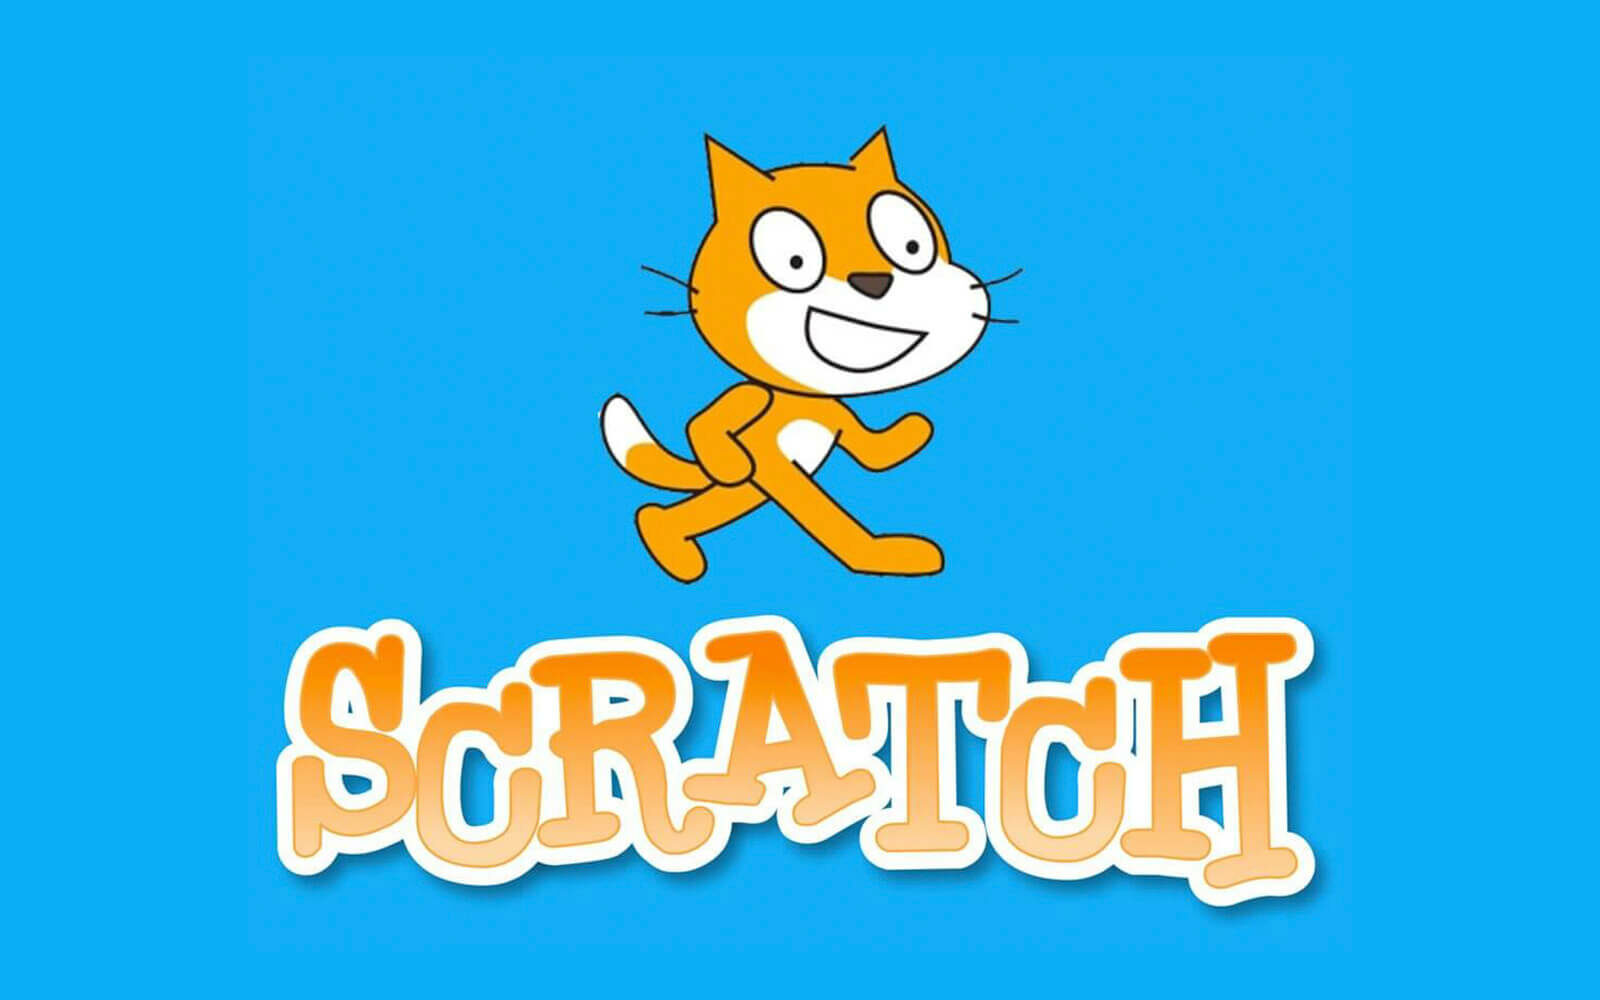 >> Scratch (deel 1)